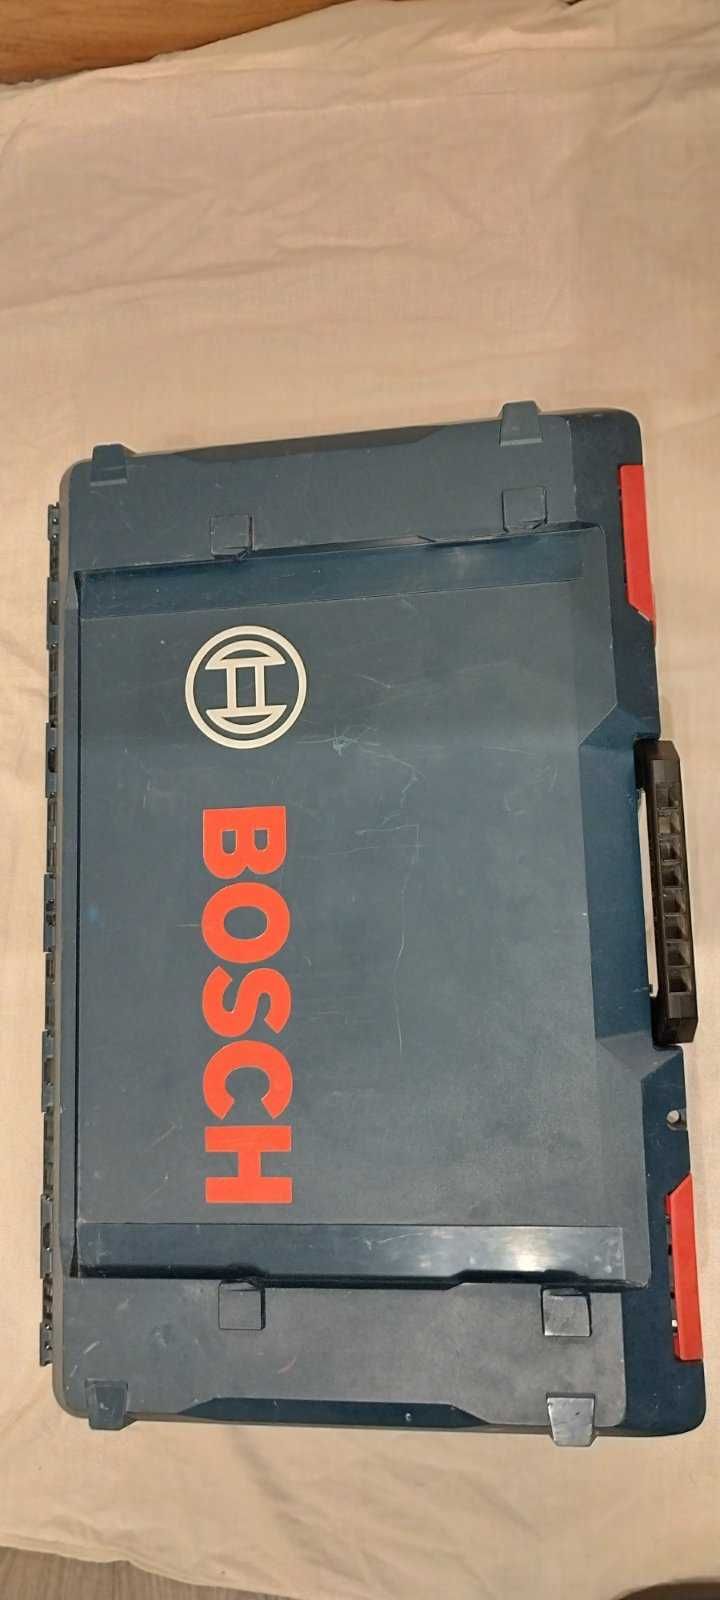 Bosch XL-BOXX кутия за инструменти